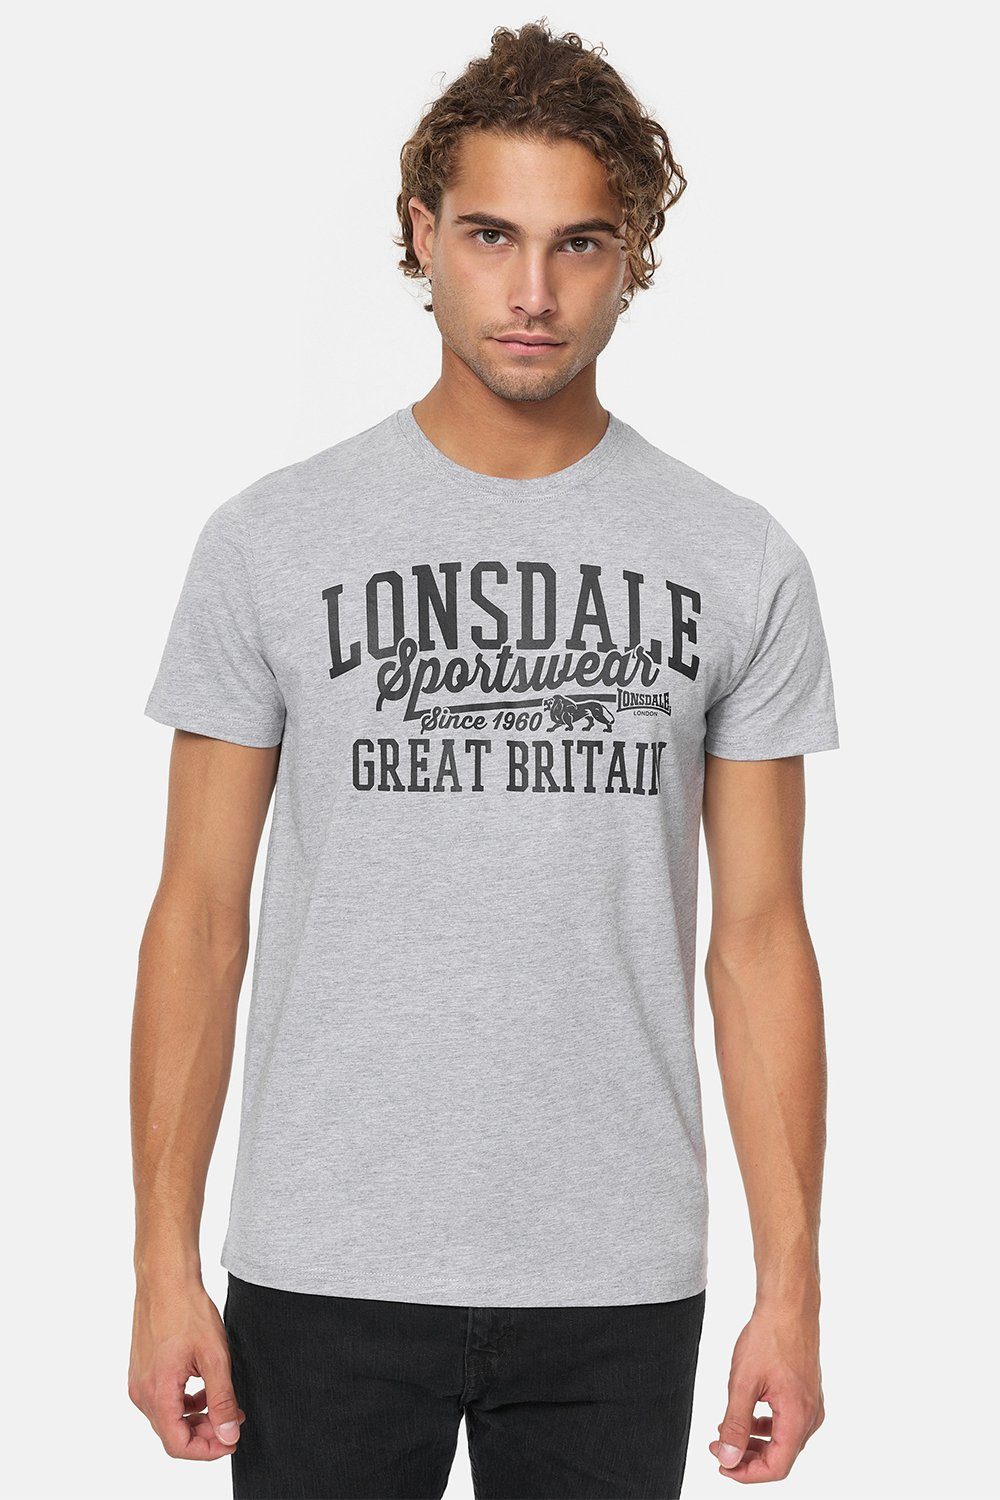 Lonsdale Grey/Black T-Shirt Marl DERVAIG